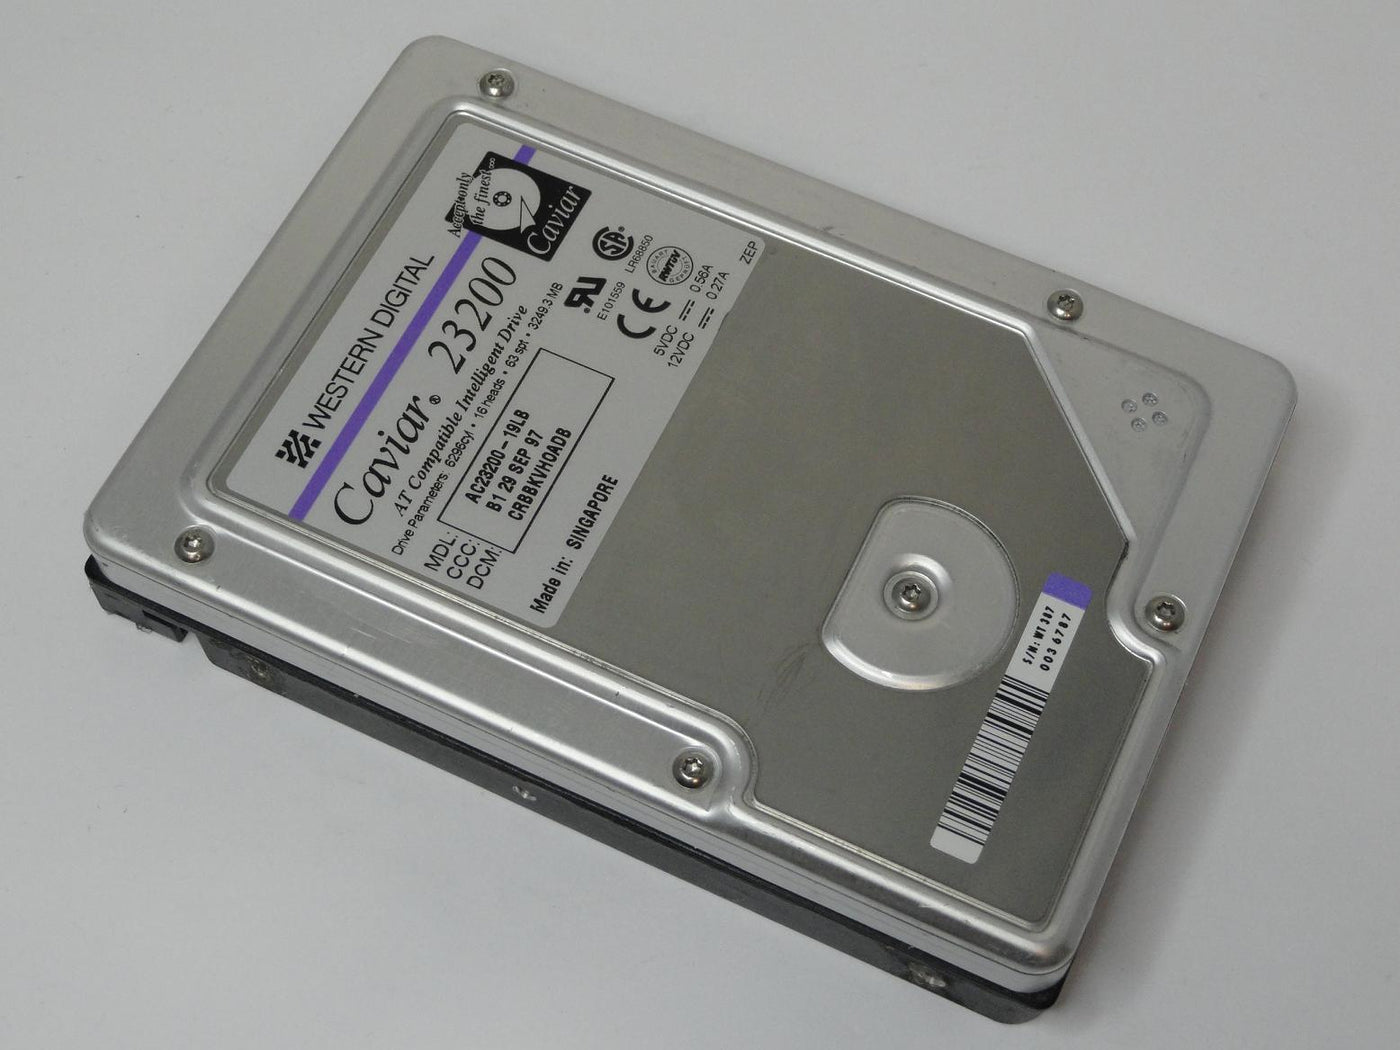 AC23200-19LB - Western Digital Caviar 3.2GB IDE 5400rpm 3.5in HDD - Refurbished